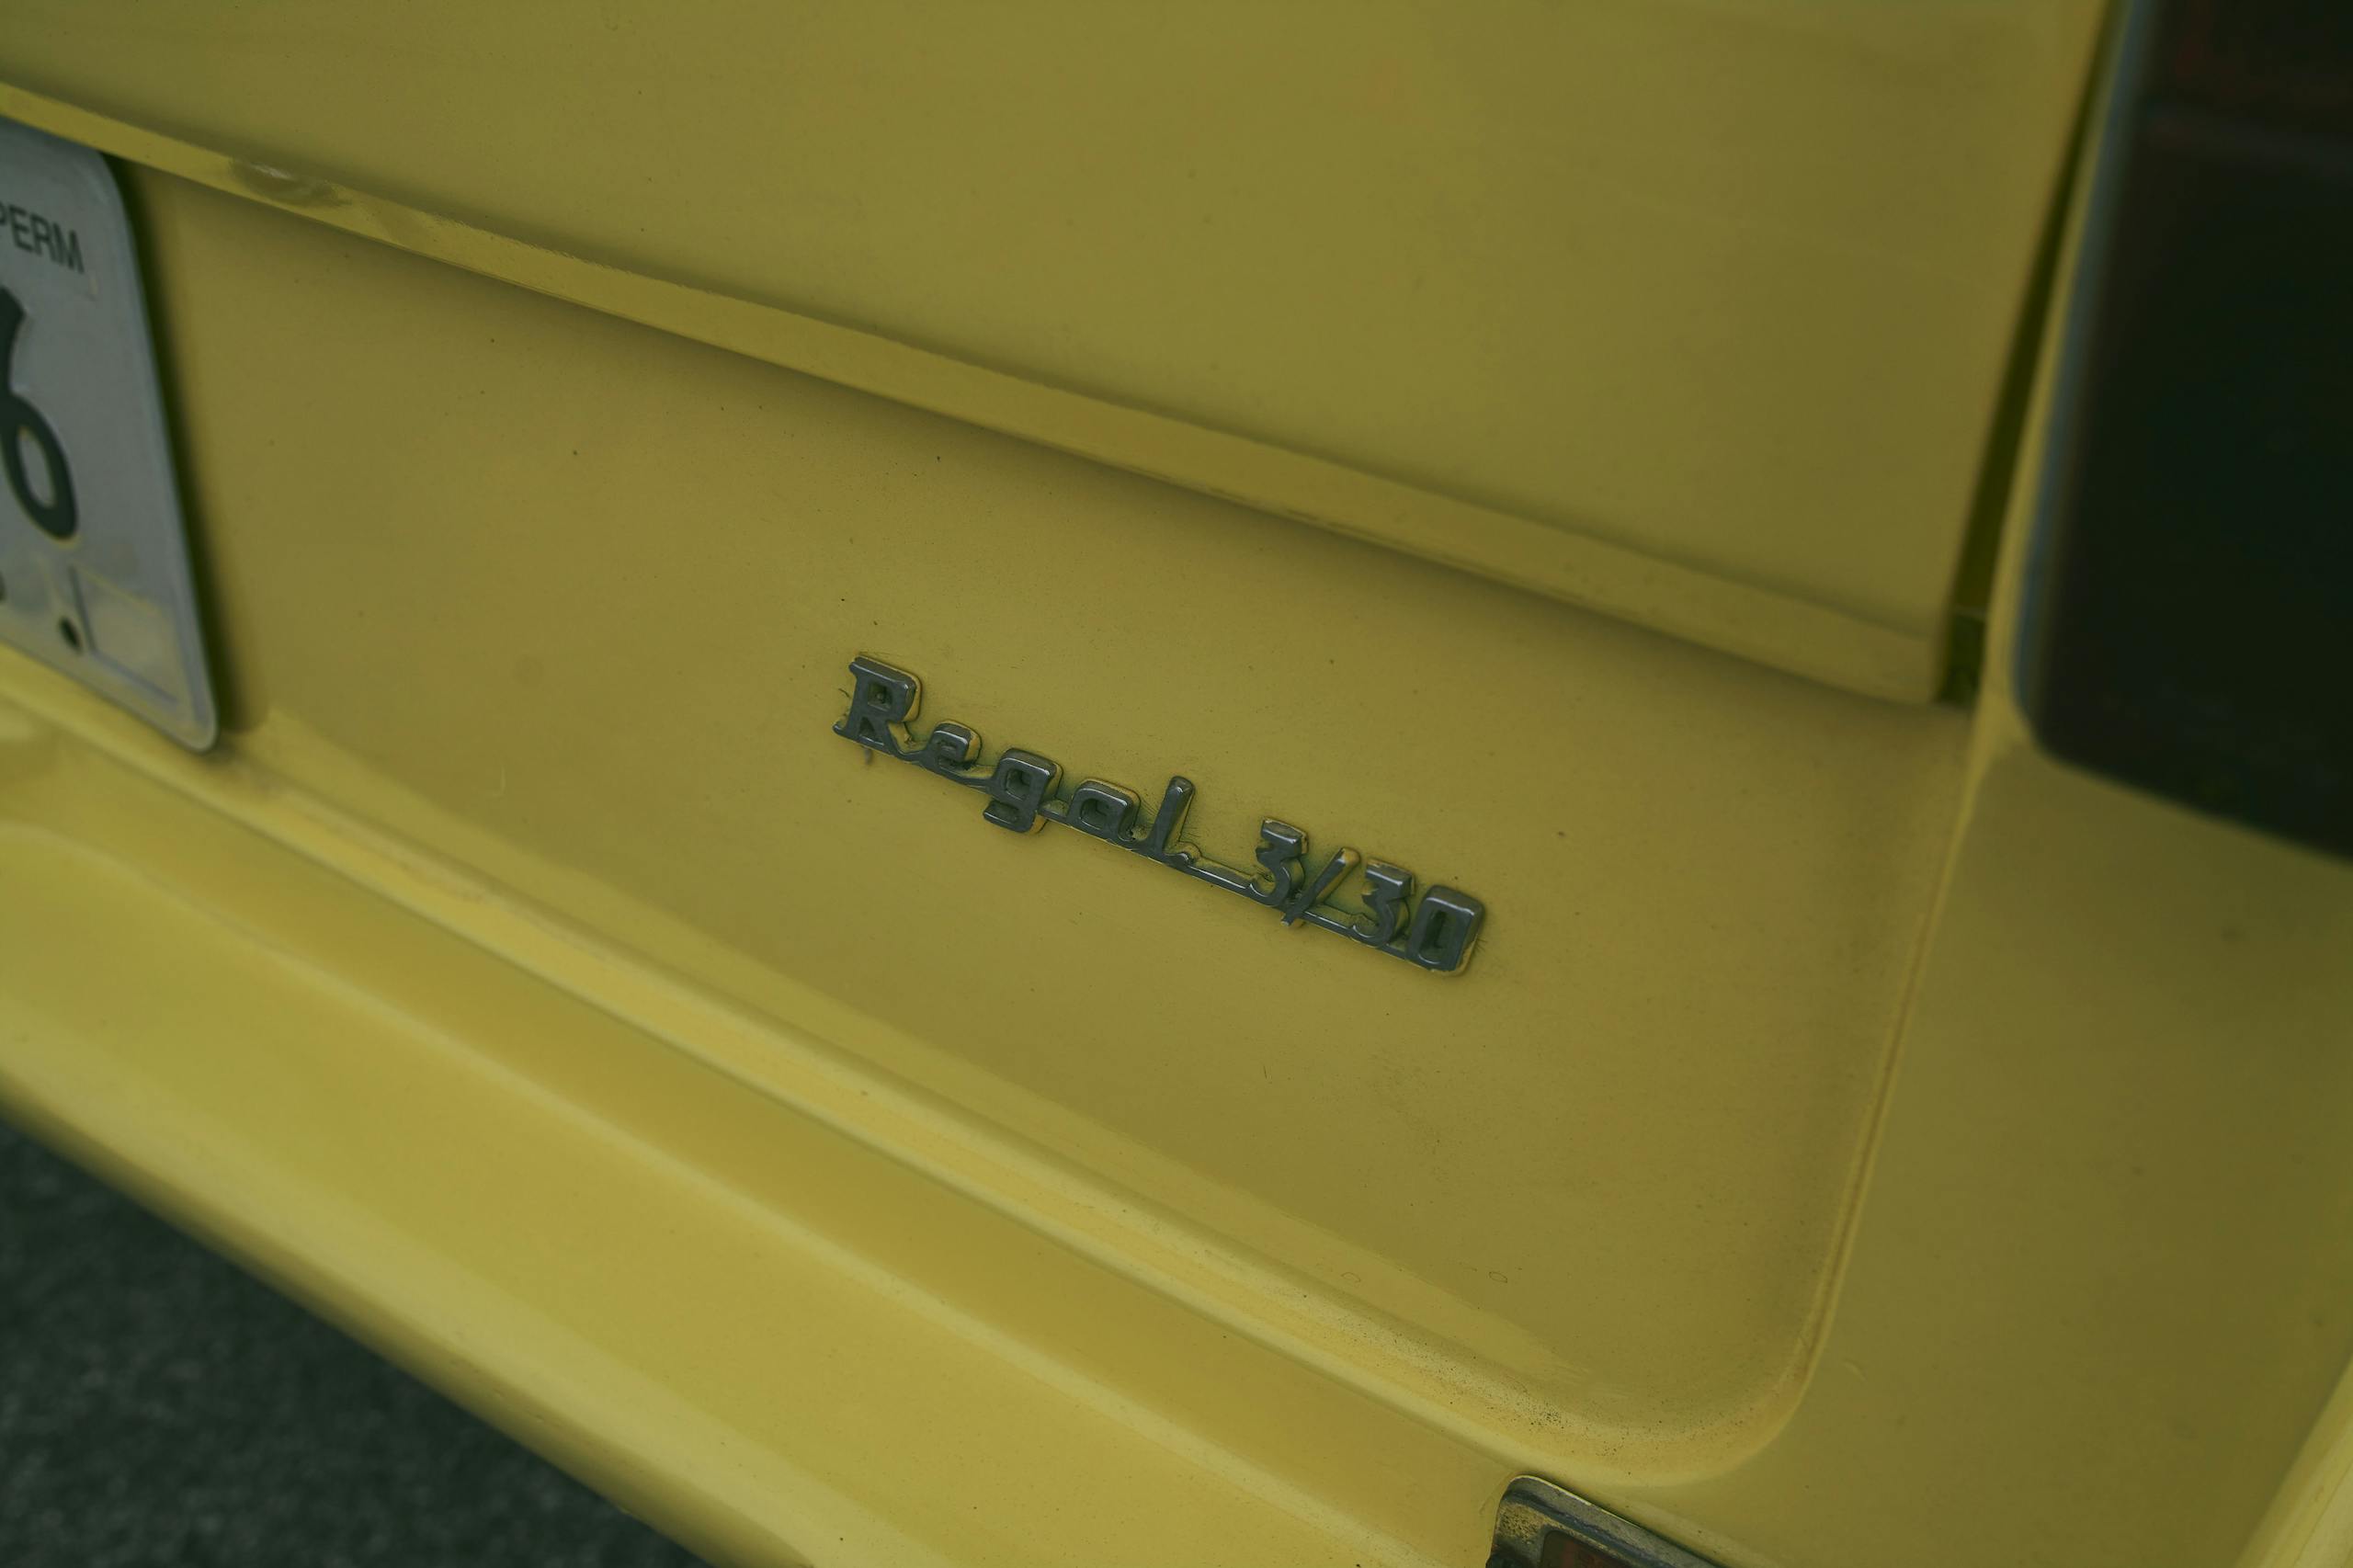 1971 Reliant Regal 330 badge